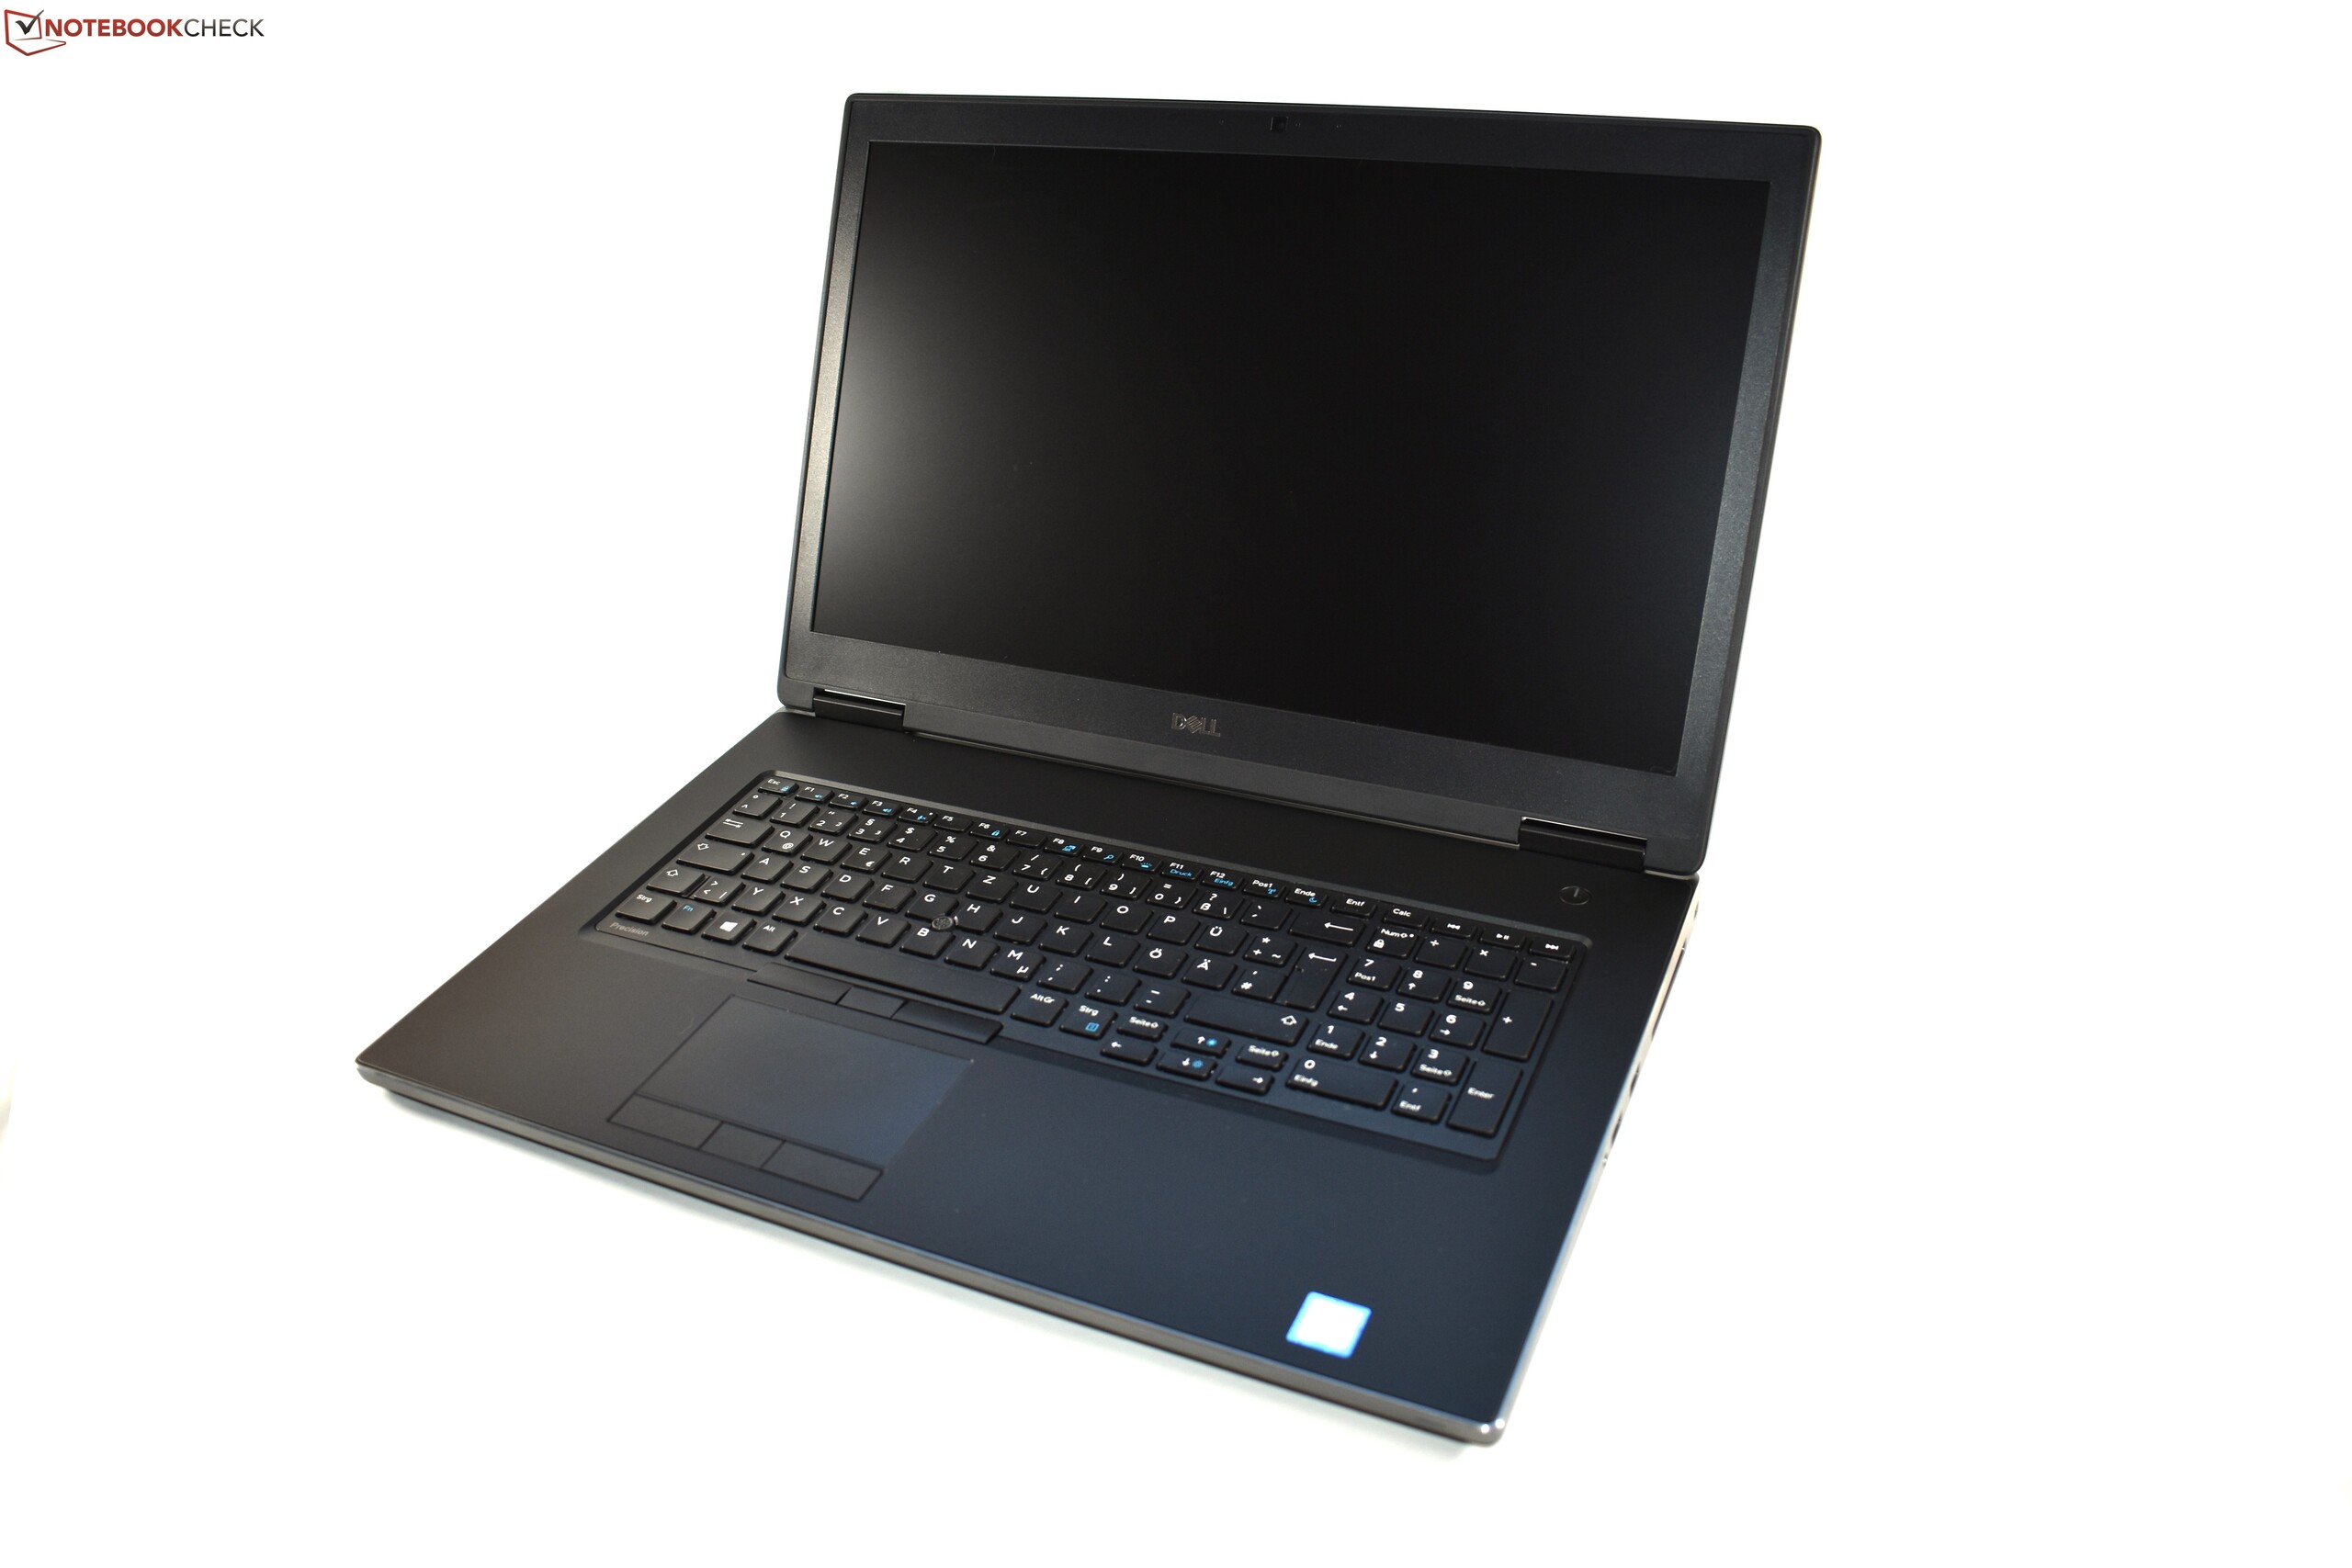 Dell Precision 7730 (Core i7-8850H, Quadro P3200, FHD) Workstation